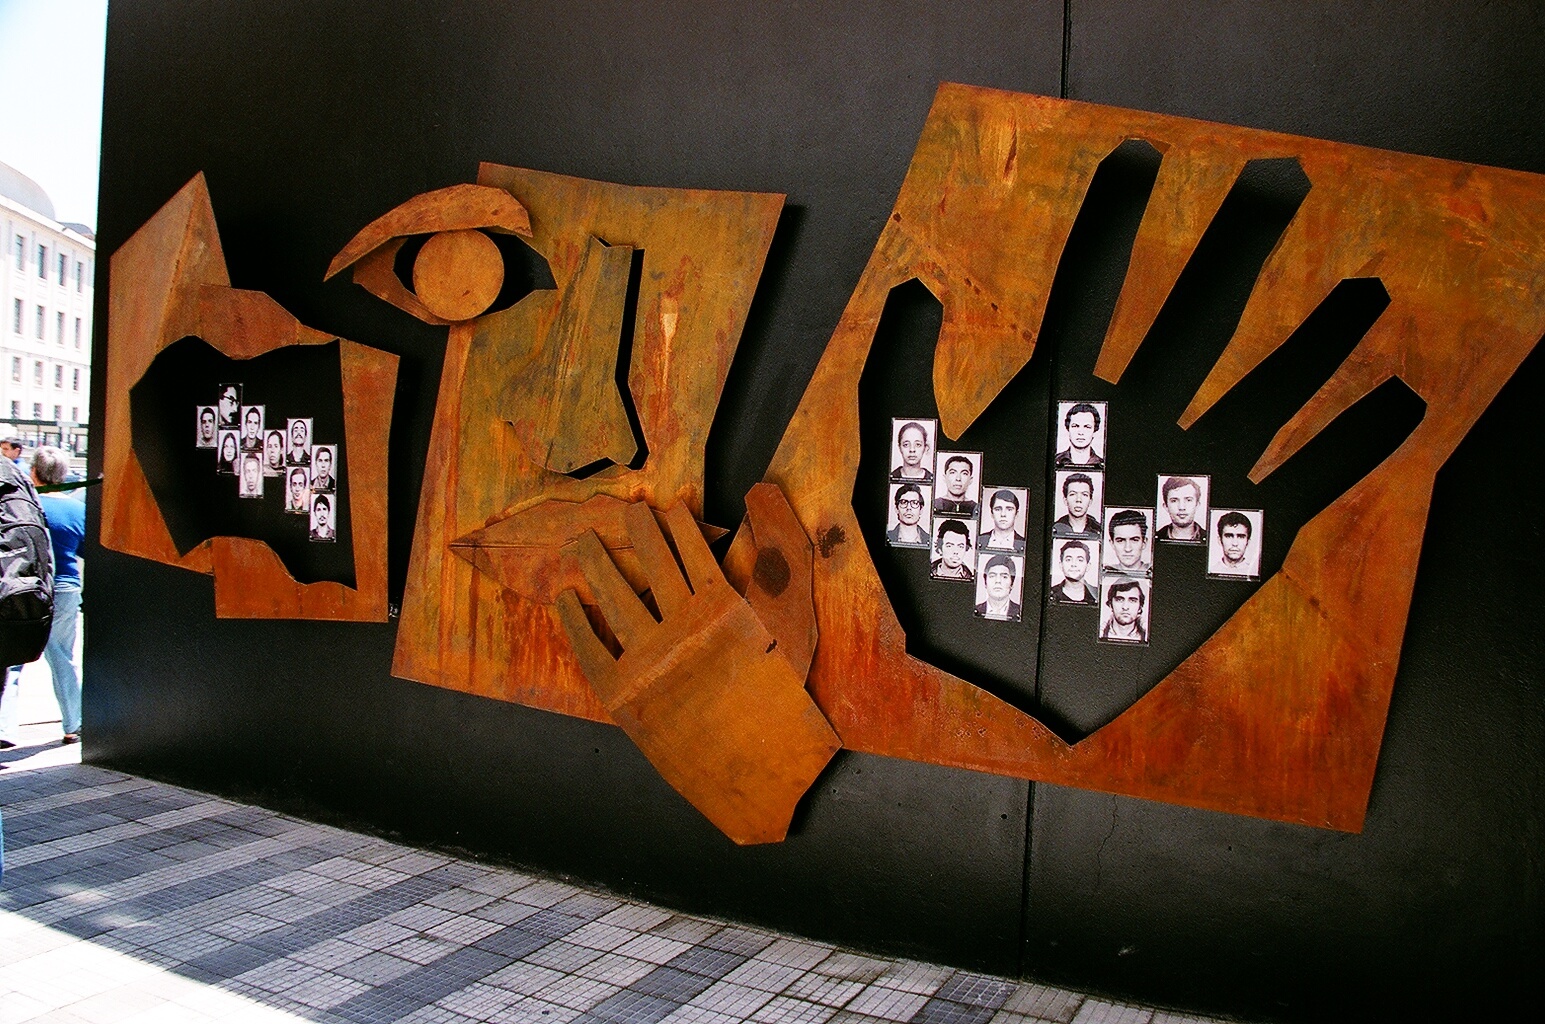 Foto colorida de instalação artística feita em ferro da cor ferrugem com a representação estilizada de um rosto e 2 mãos. Por dentro de uma das mãos, vemos 14 fotos 3x4 de jovens.